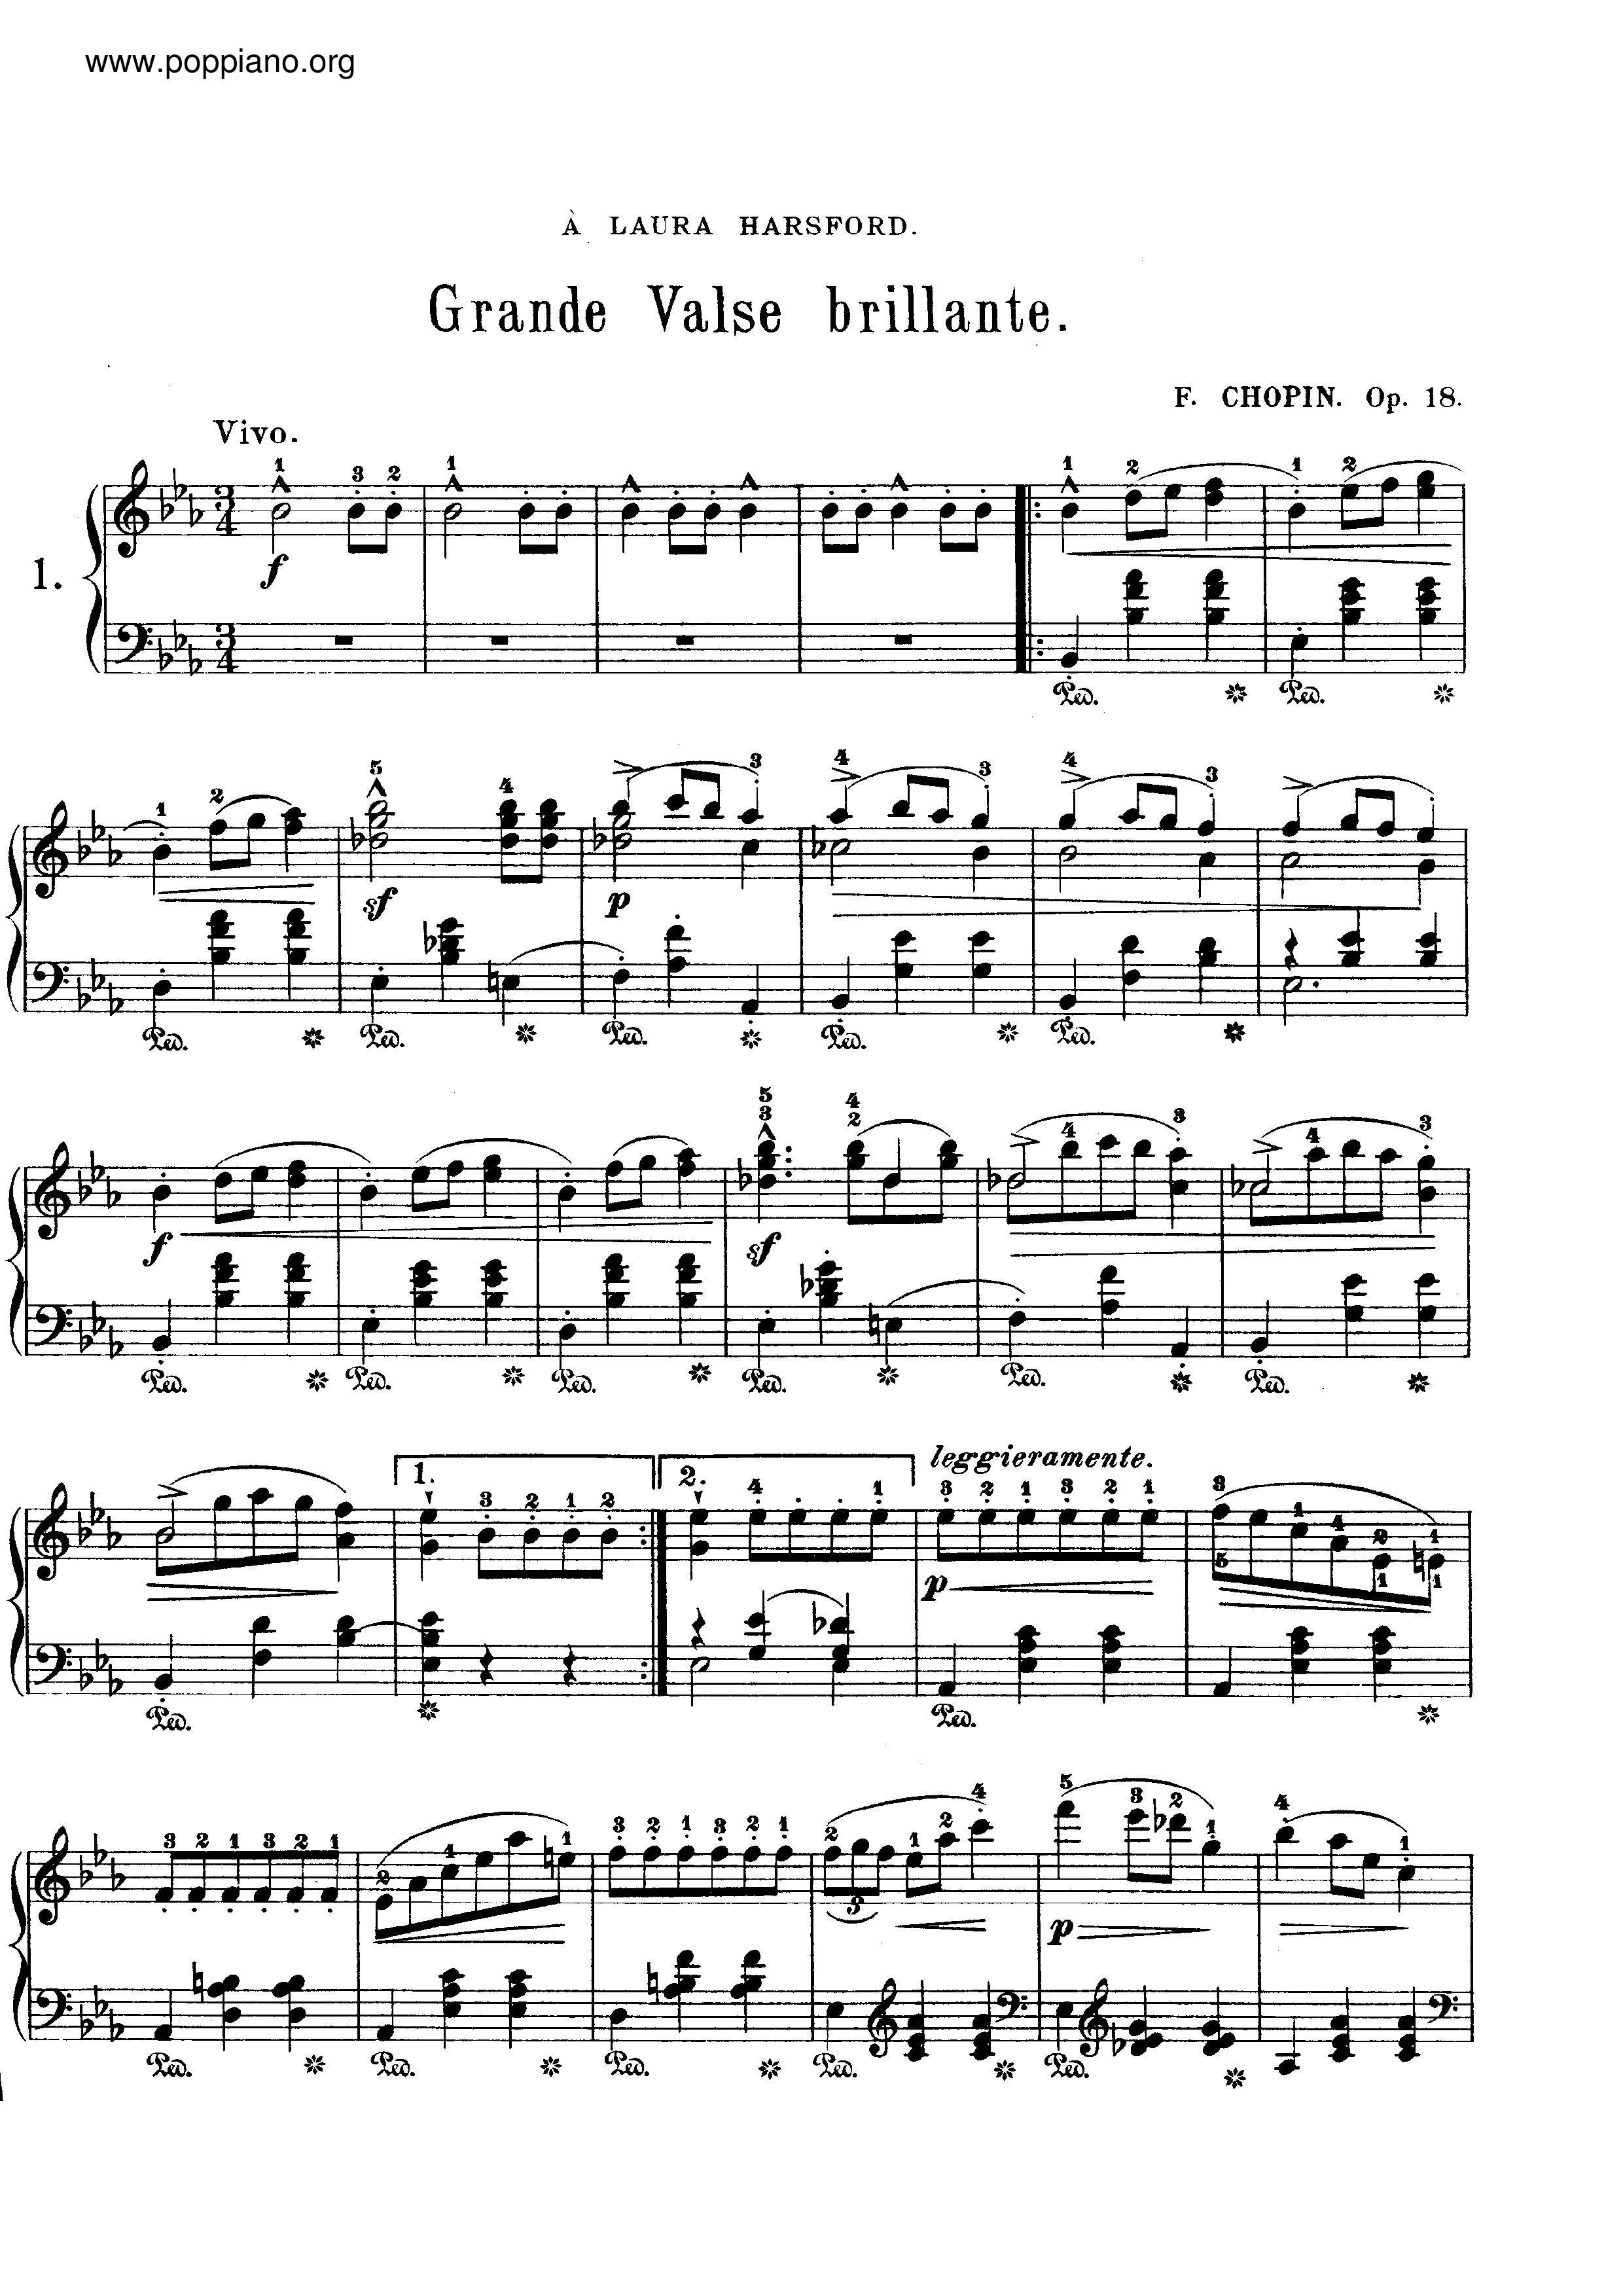 Op. 18, Grande Waltz Brillante Score